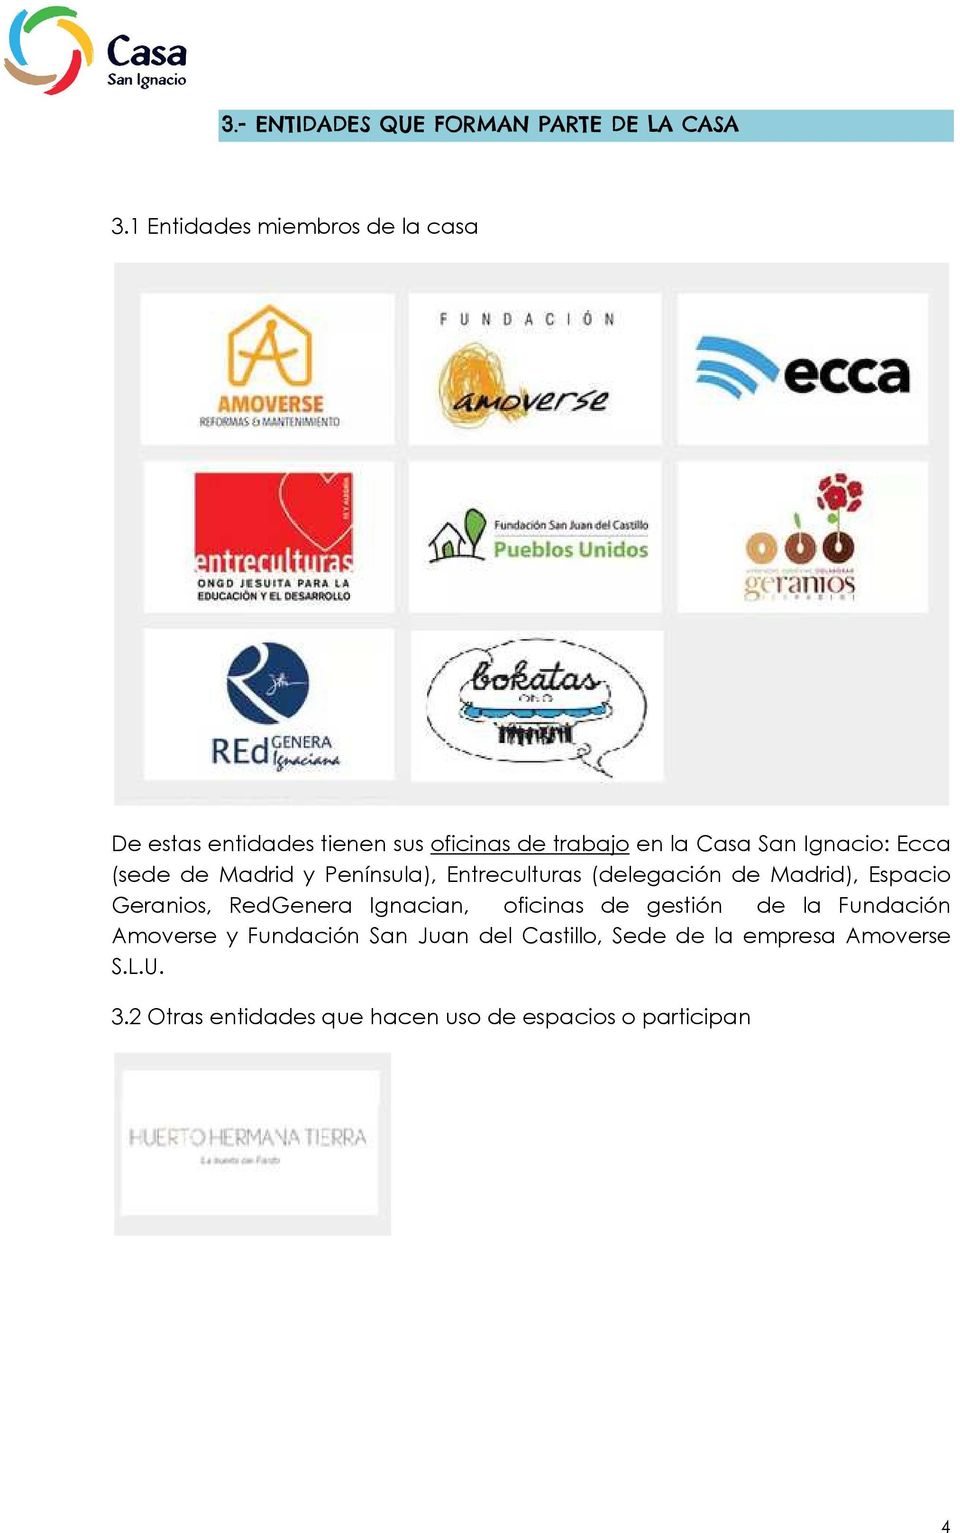 Ecca (sede de Madrid y Península), Entreculturas (delegación de Madrid), Espaci Geranis, RedGenera